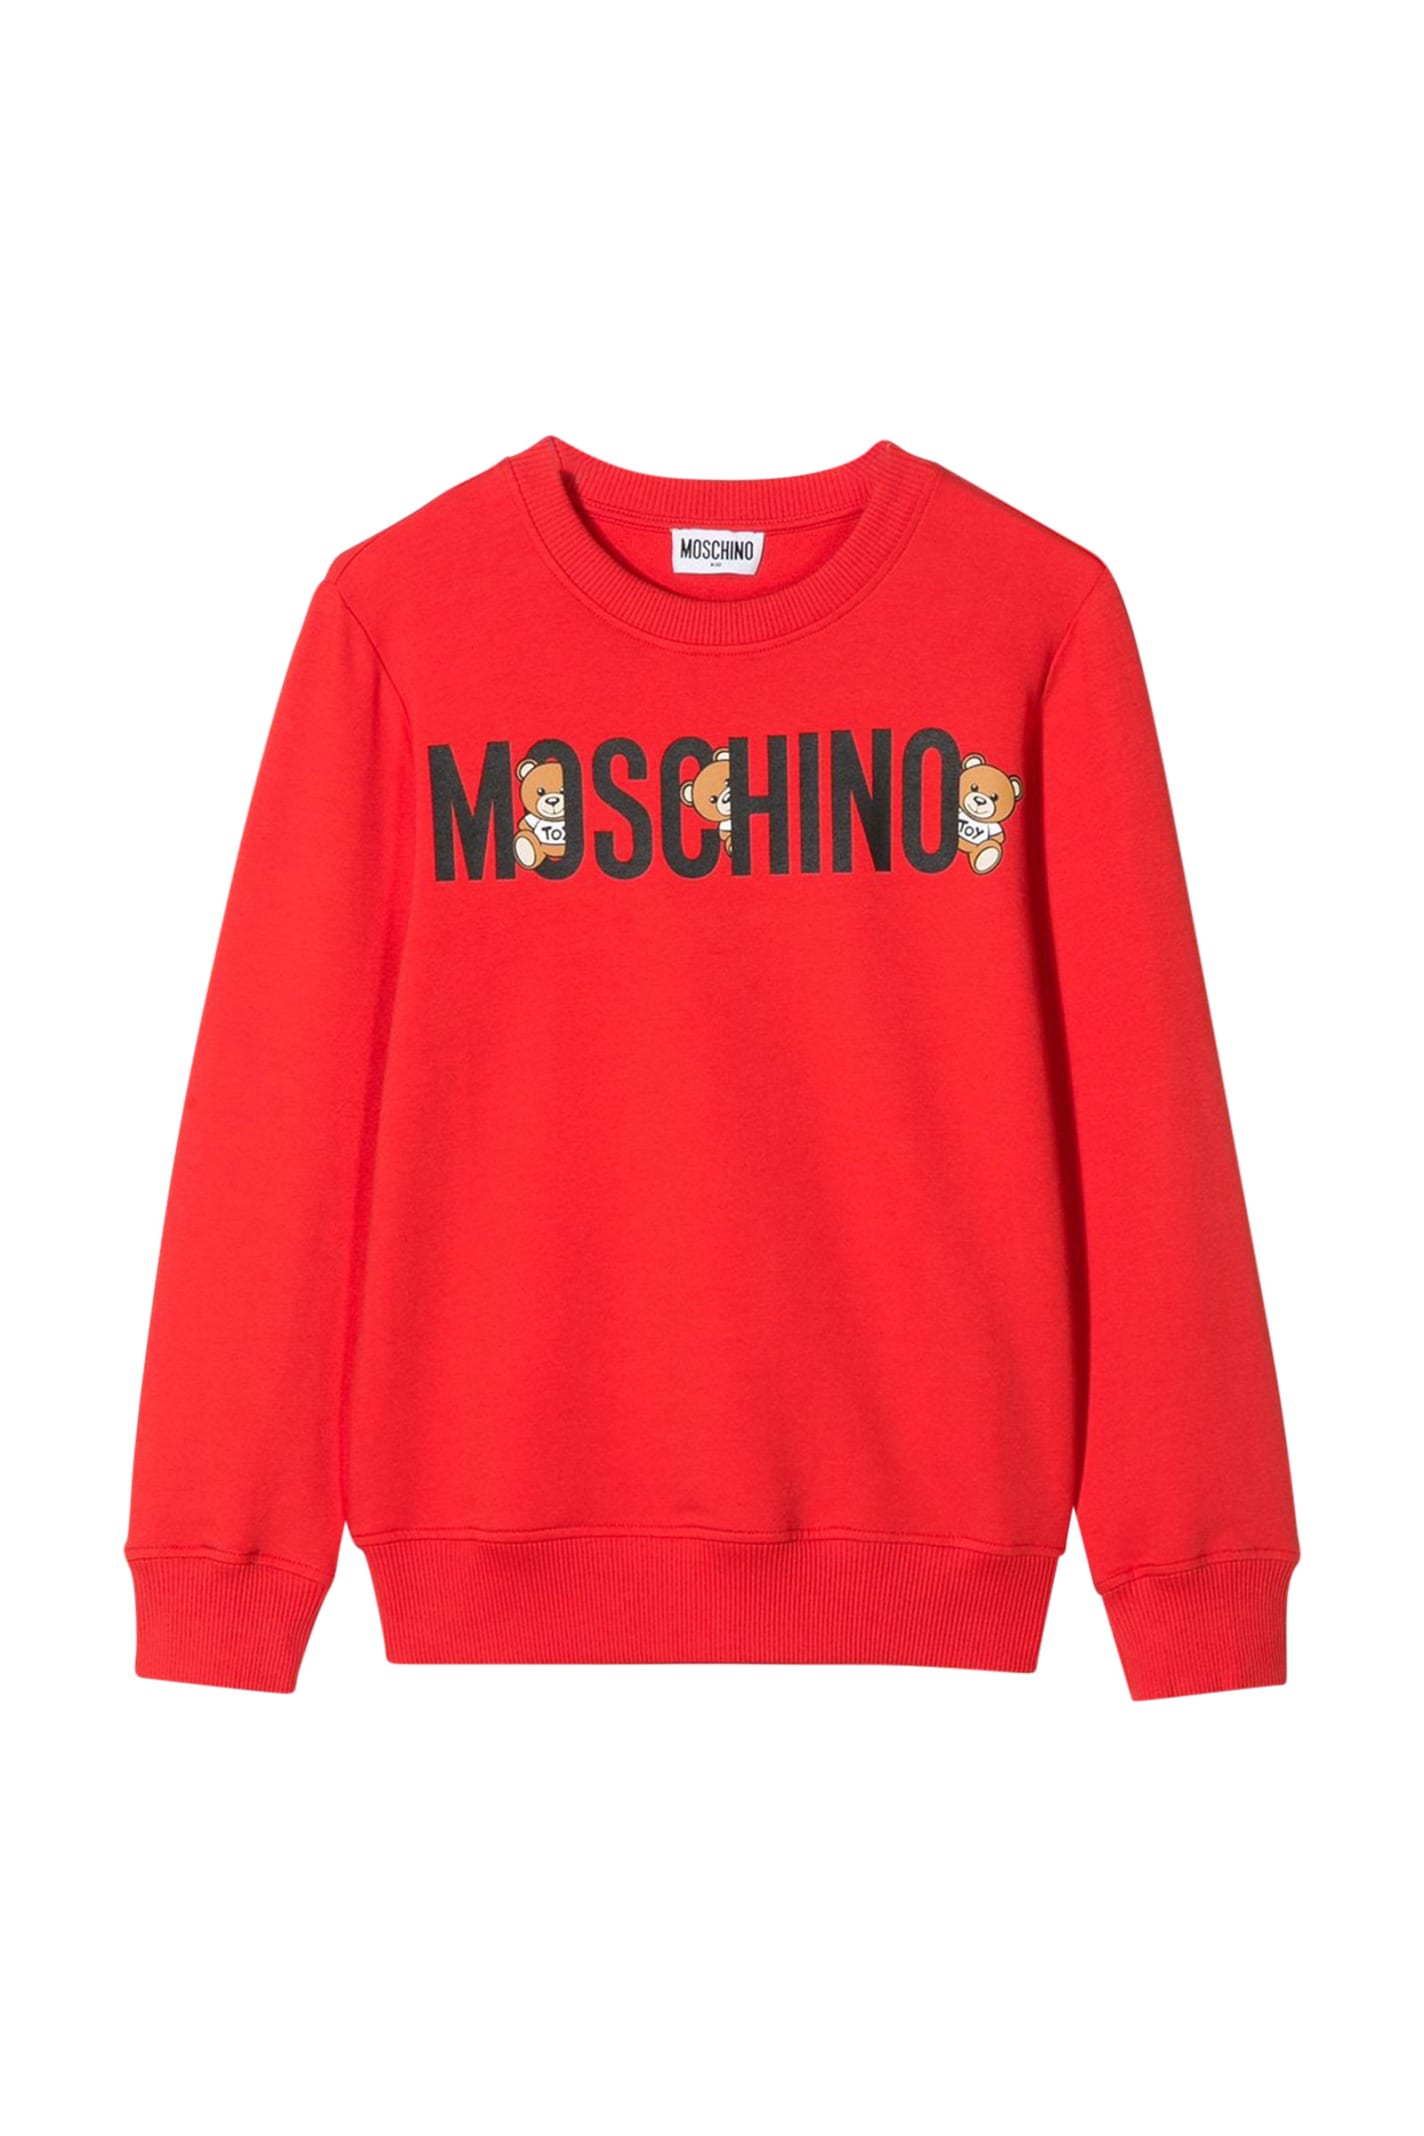 moschino red sweatshirt